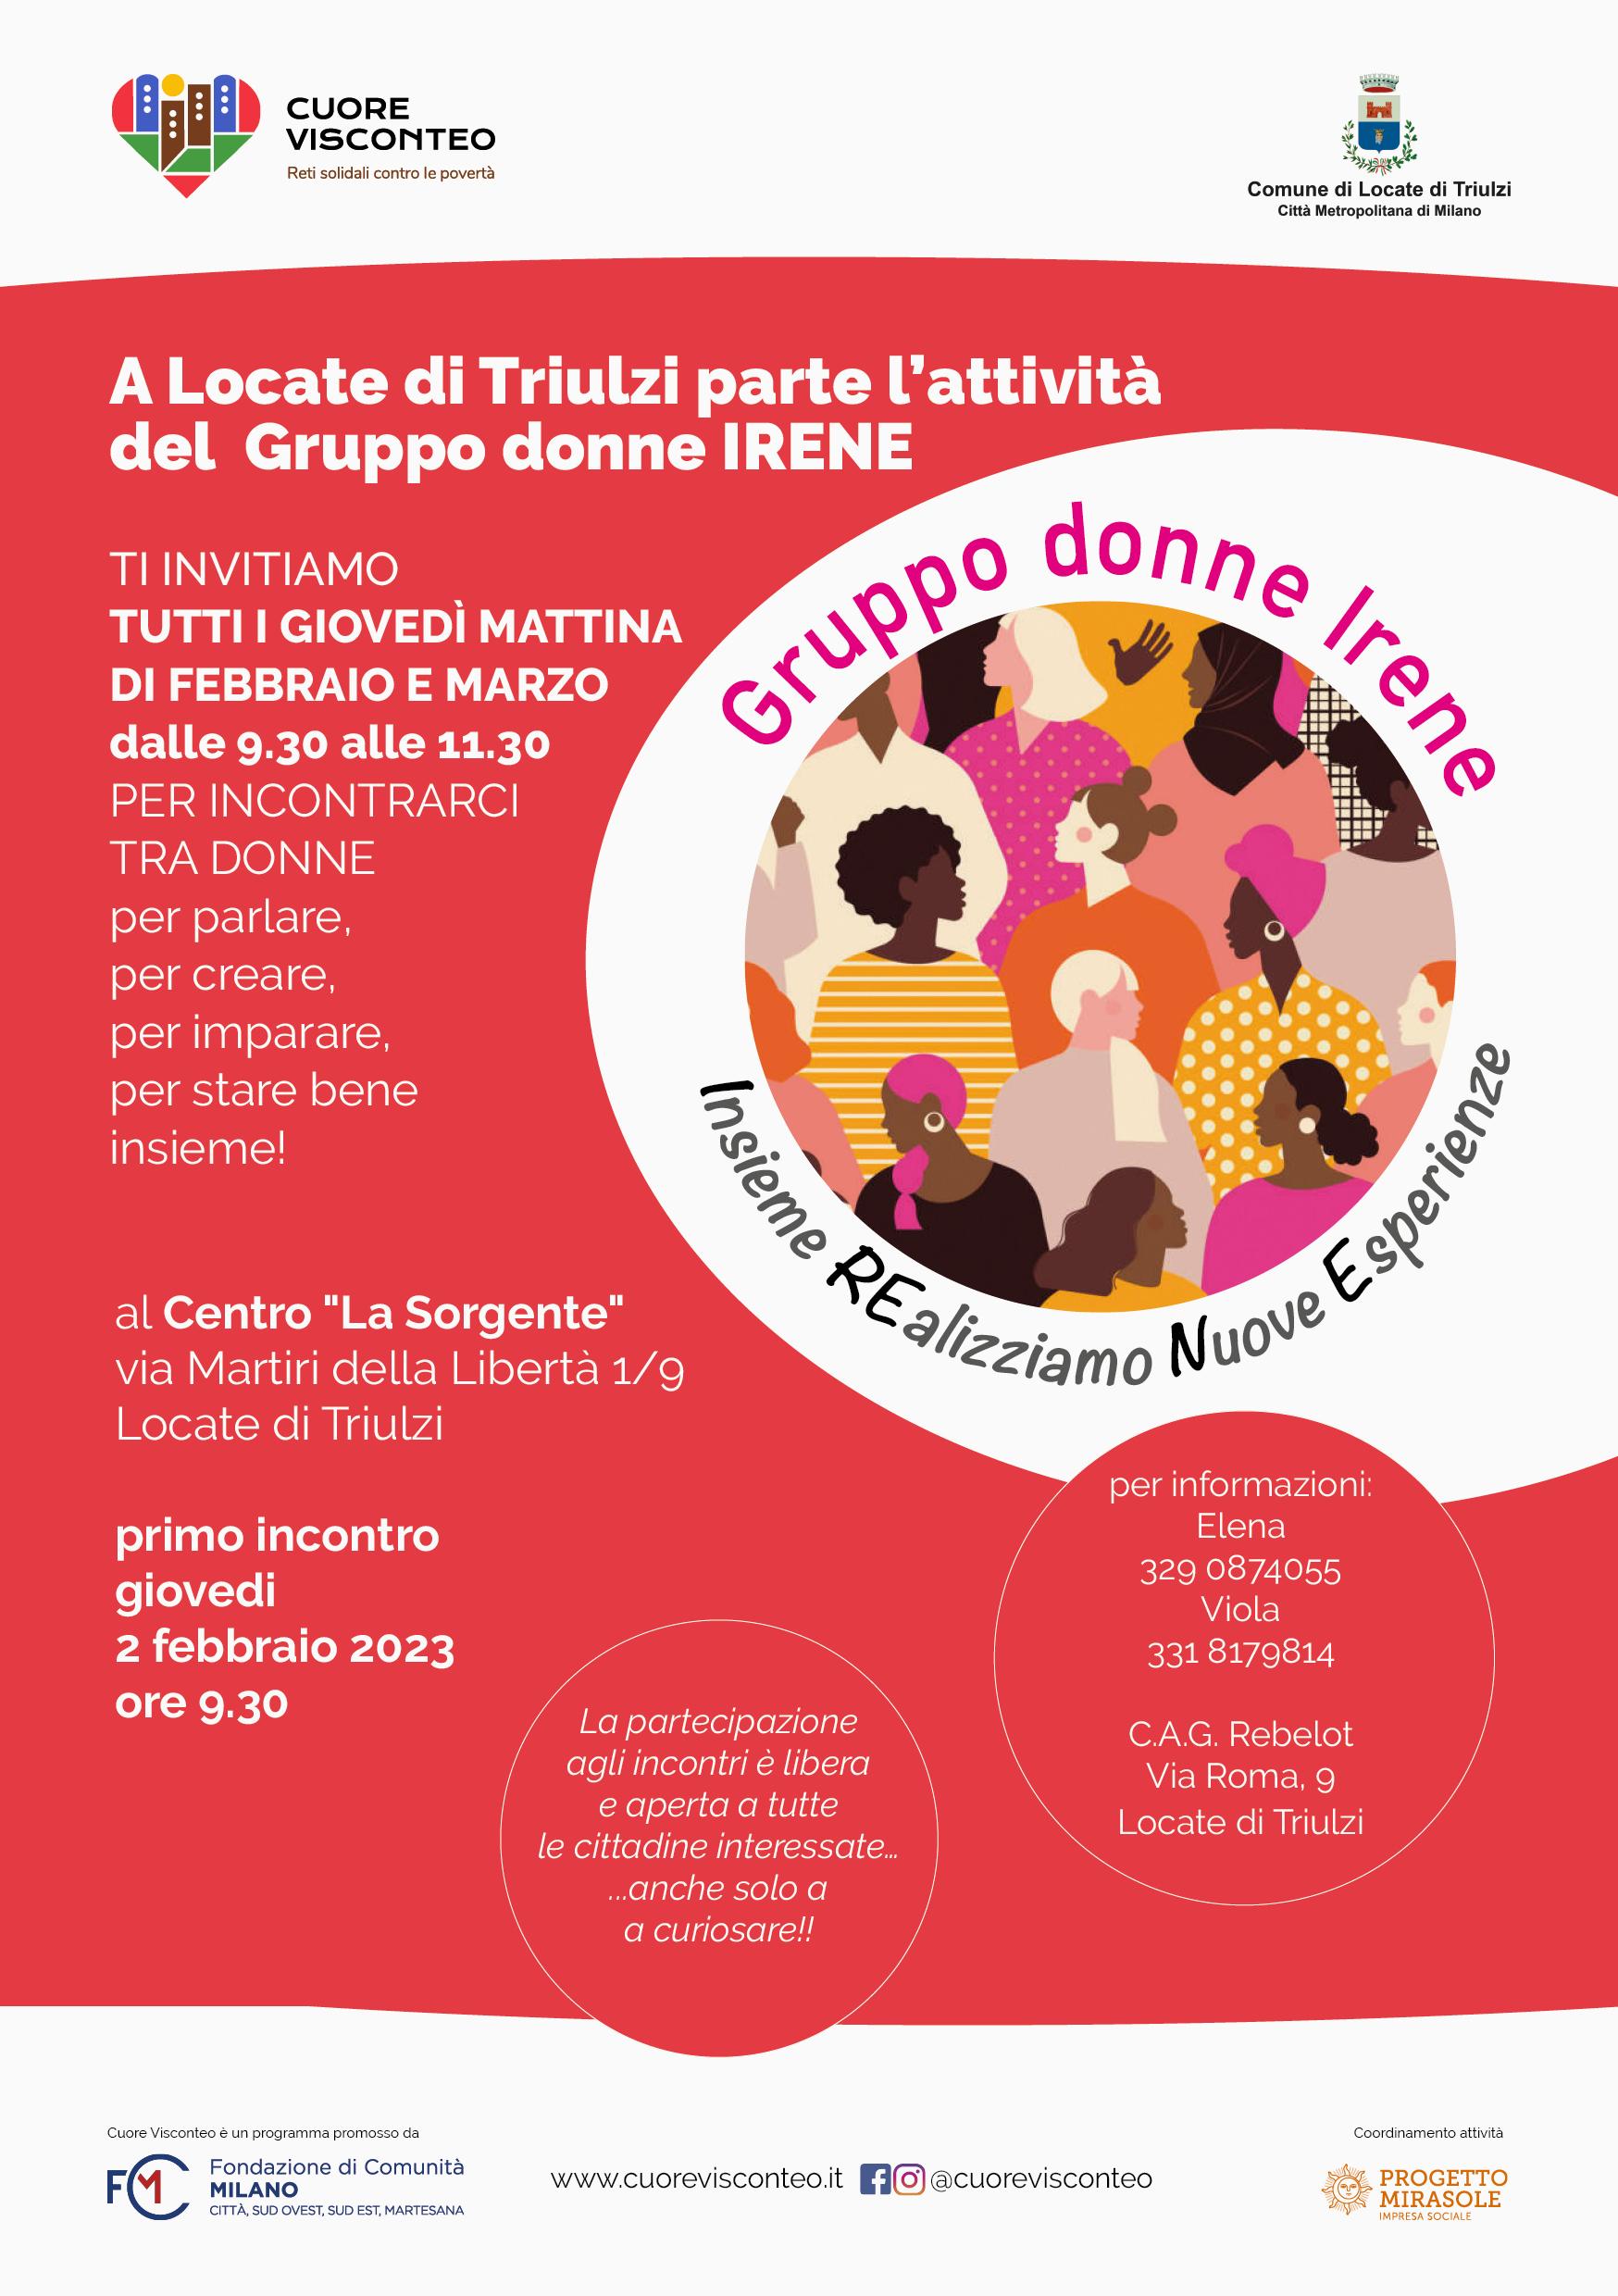 invito per appuntamenti, iniziative e incontri del gruppo donne Irene di Locate di Trulzi in provincia di Milano